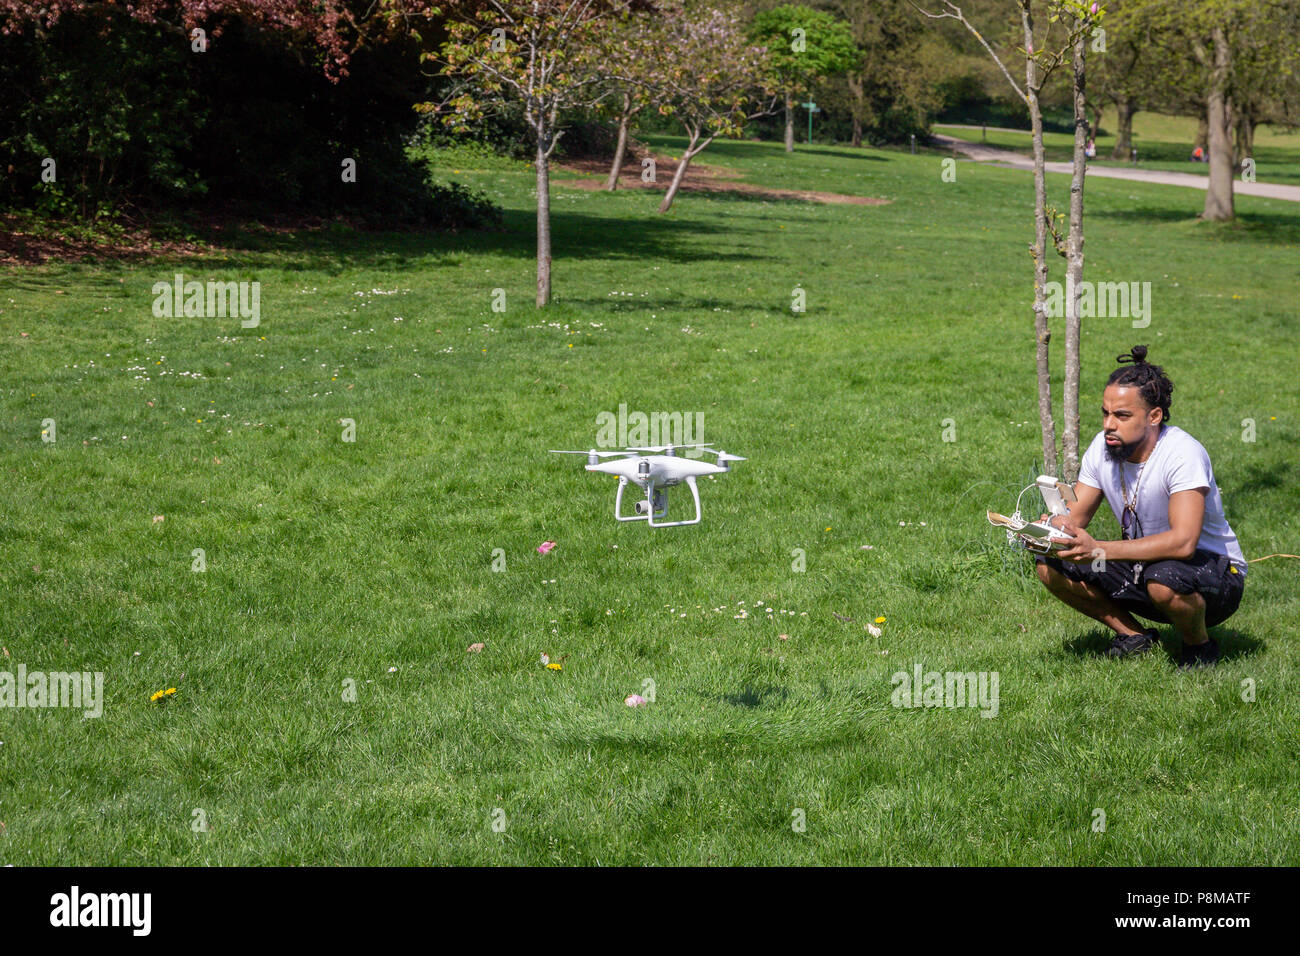 Un homme volant son drone dans un Crystal Palace Park, Londres, Angleterre Banque D'Images